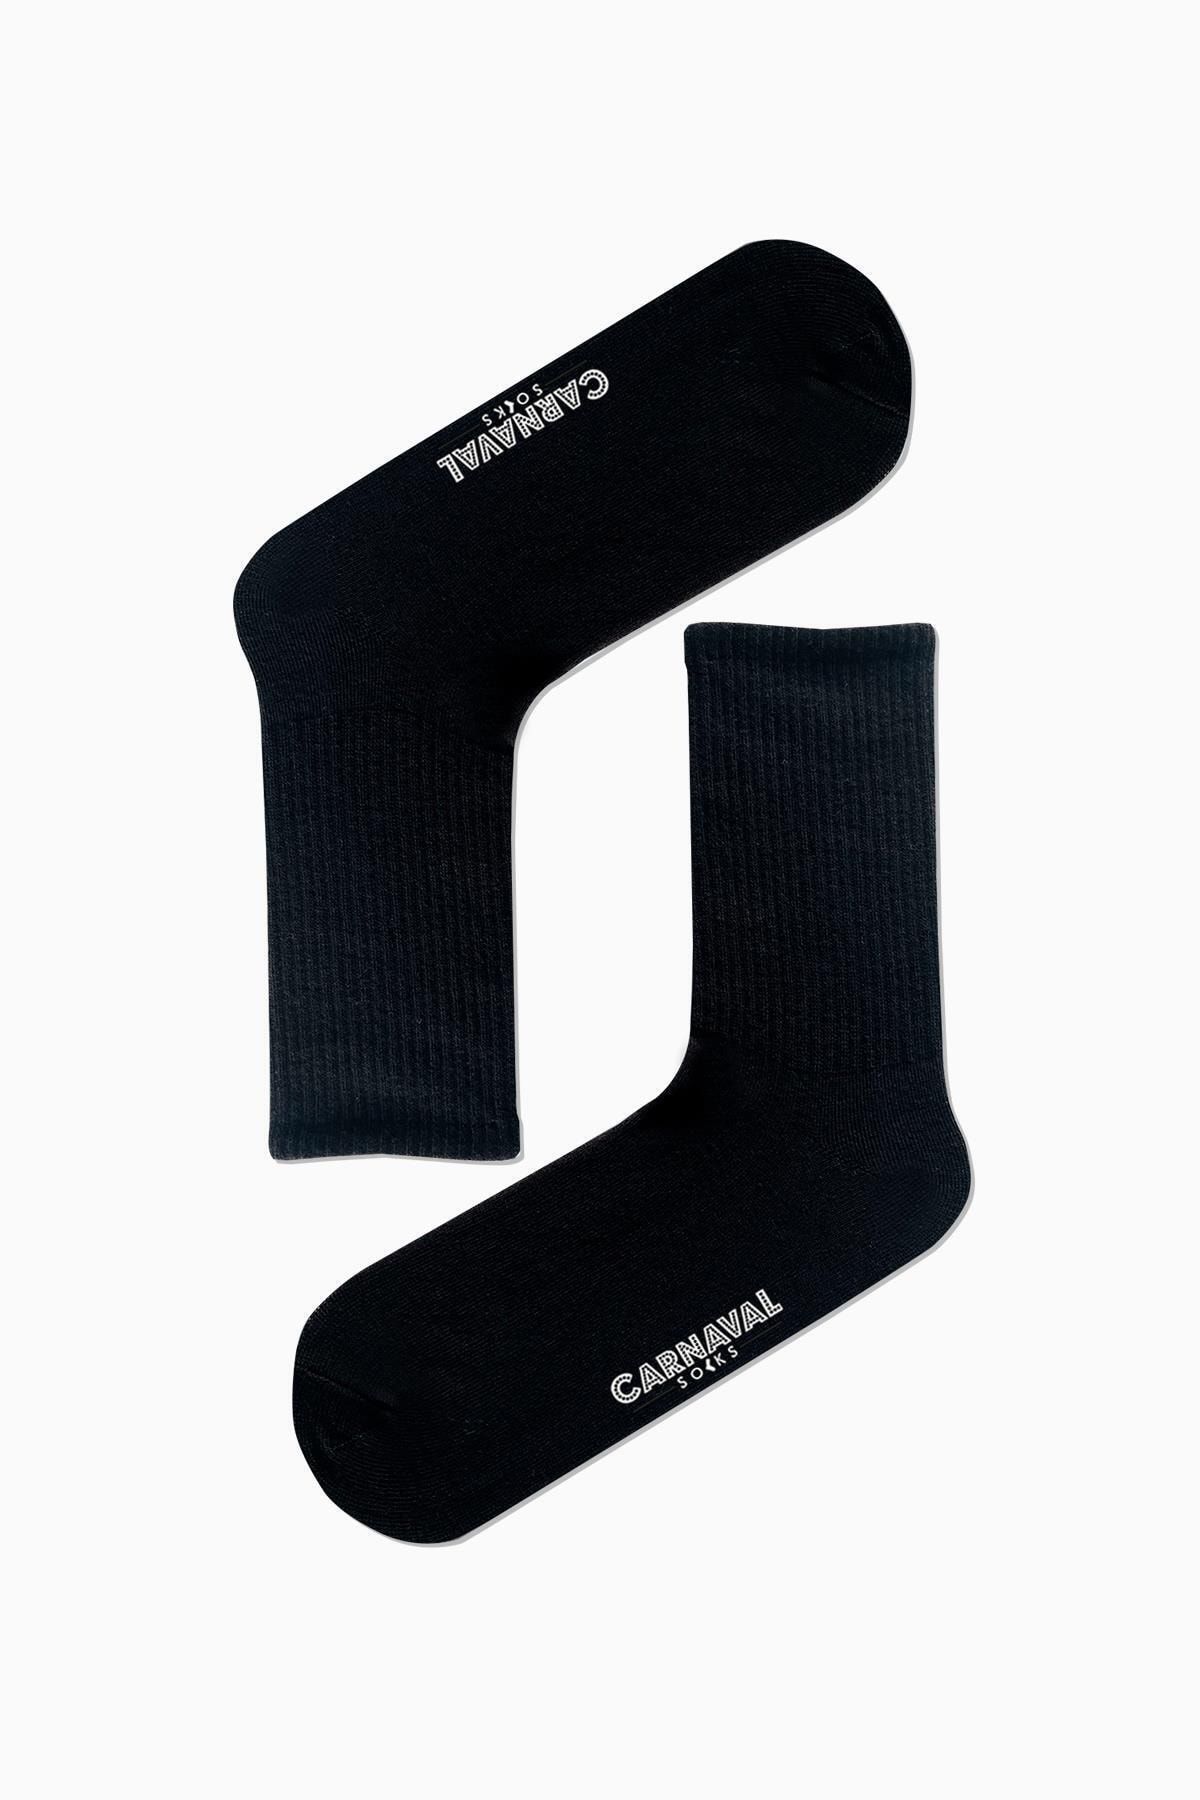 CARNAVAL SOCKS Düz Siyah Desensiz Renkli Spor Çorap